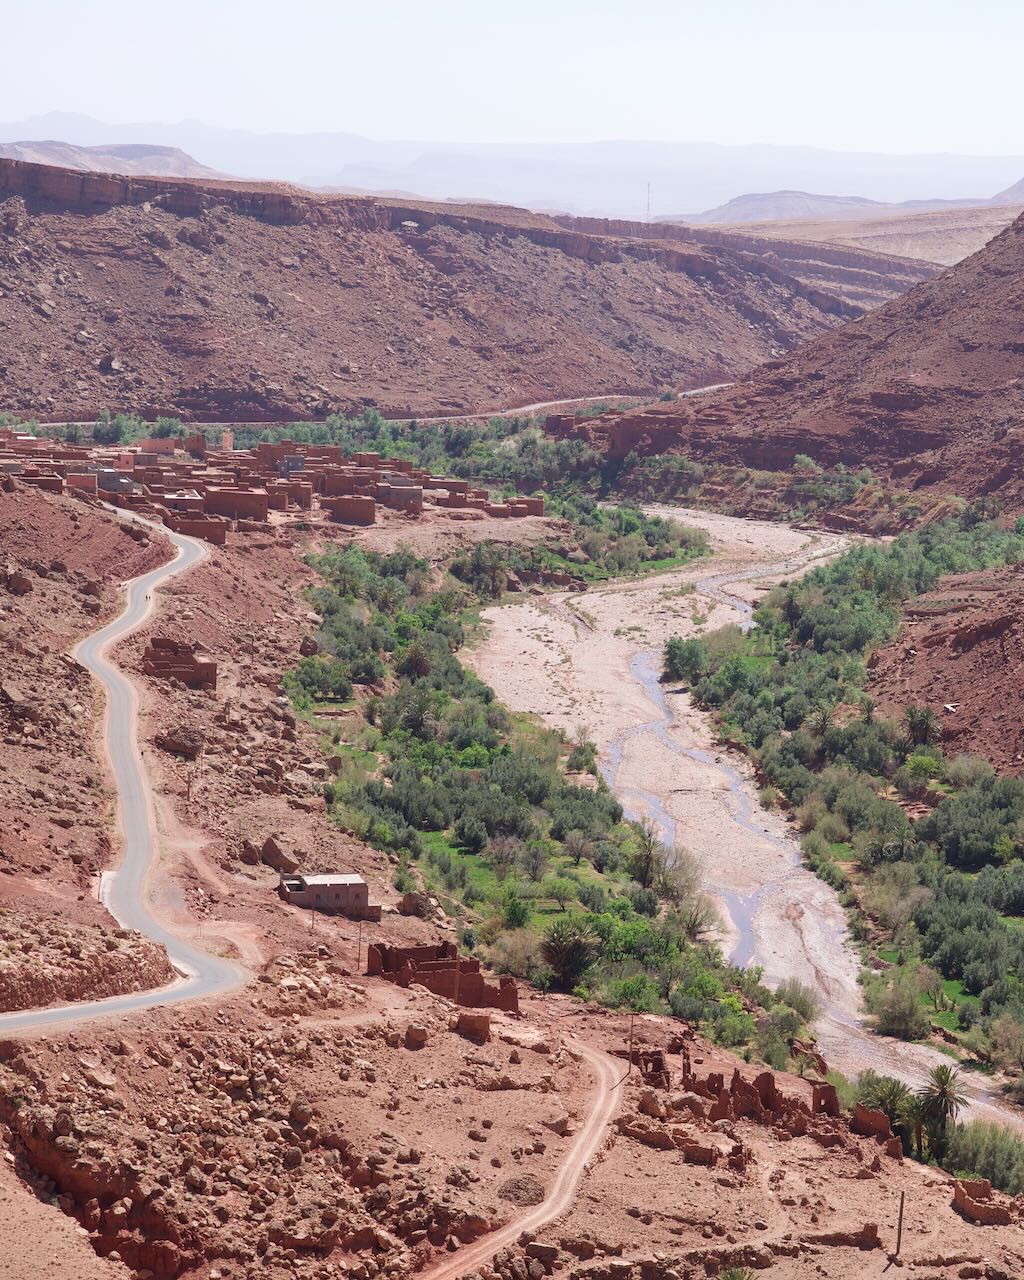 Paisaje árido visto en el tour hacia Ait Benhaddou en la Cordillera del Atlas.